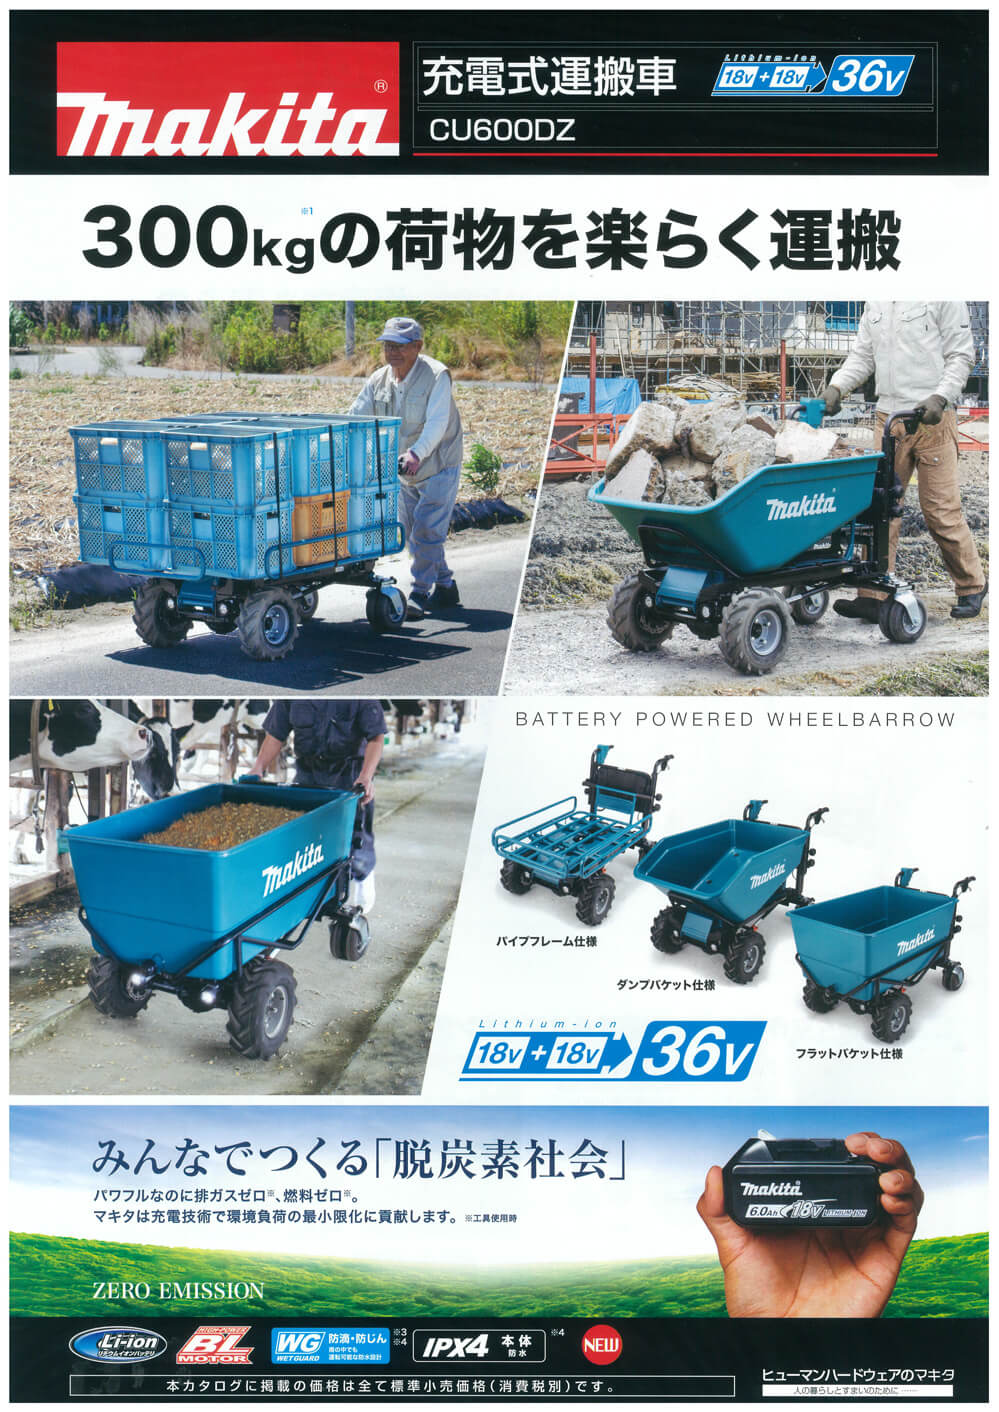 マキタ(Makita) パイプフレームセット品 A-65470 - 1